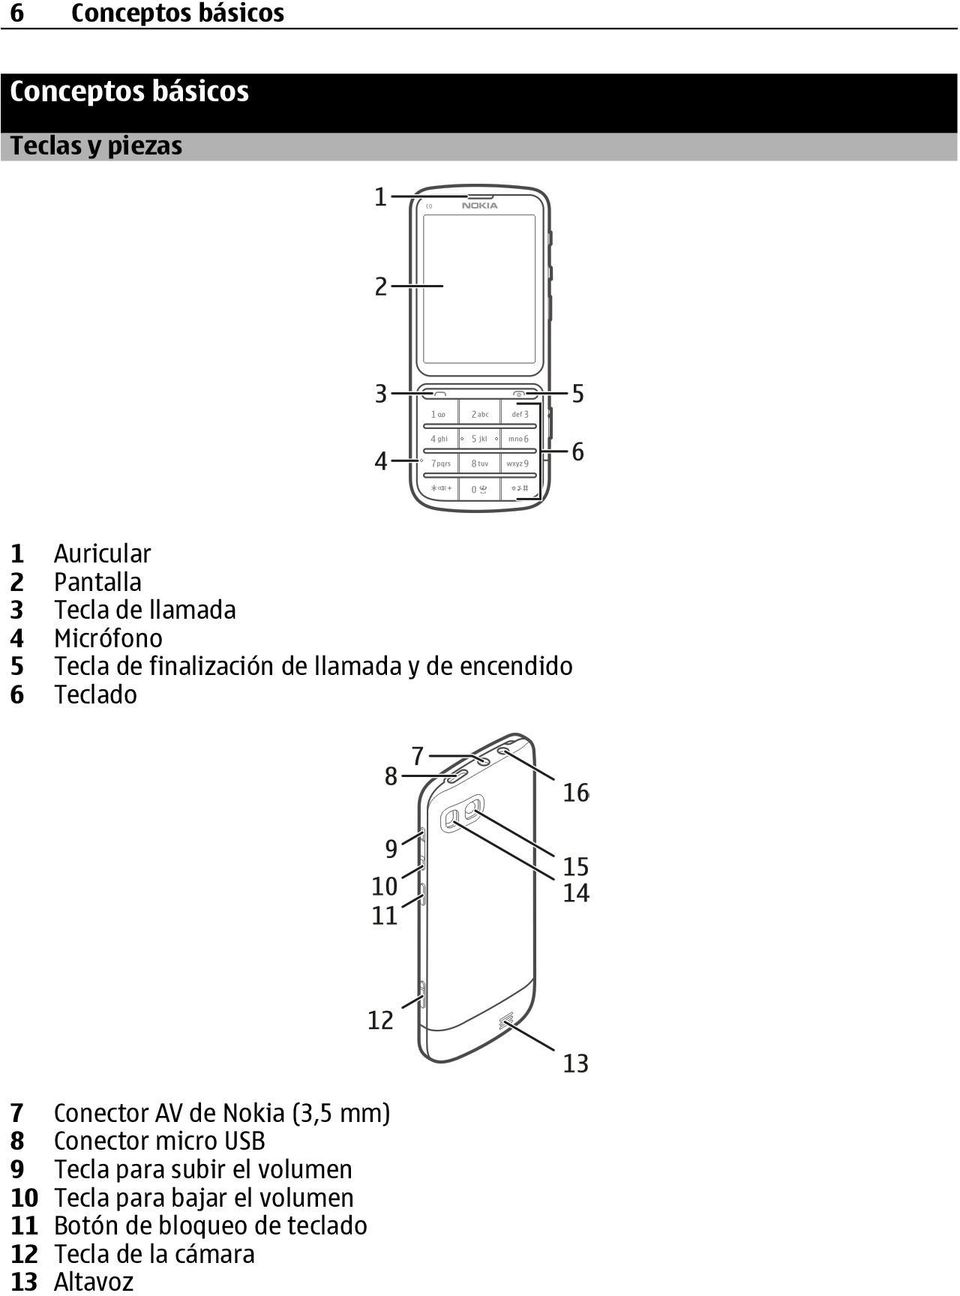 Conector AV de Nokia (3,5 mm) 8 Conector micro USB 9 Tecla para subir el volumen 10